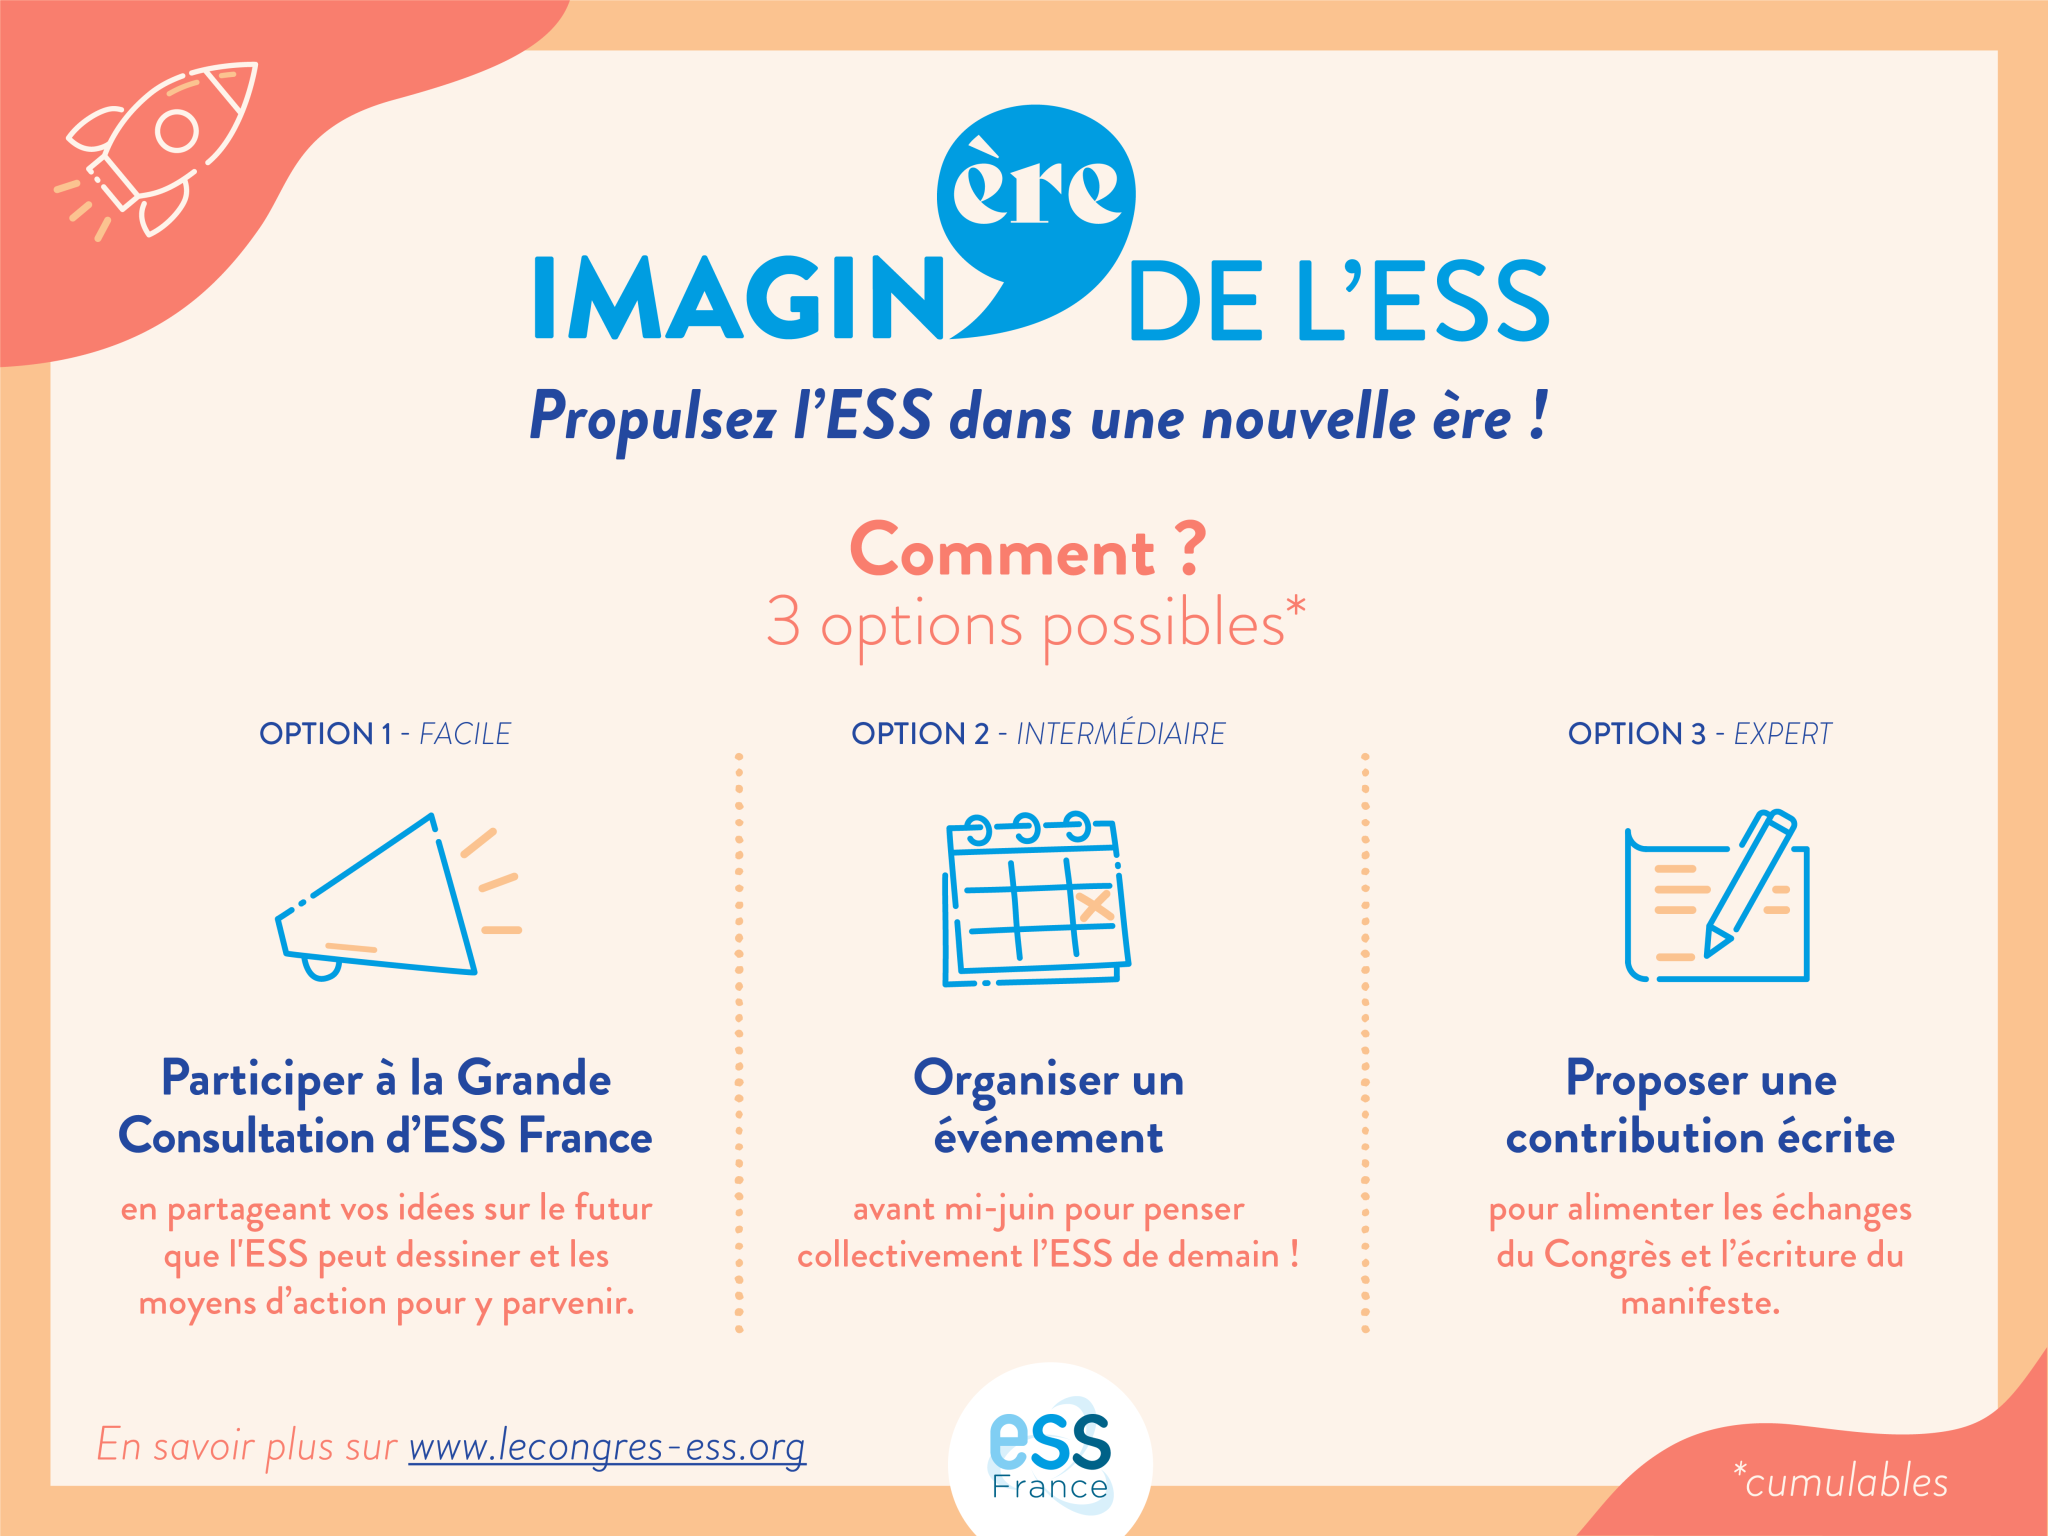 Prendre part à l'initiative Imagin'ère de l'ESS, à travers la grande consultation d'ESS France, l'organisation d'un événement ou la contribution écrite.